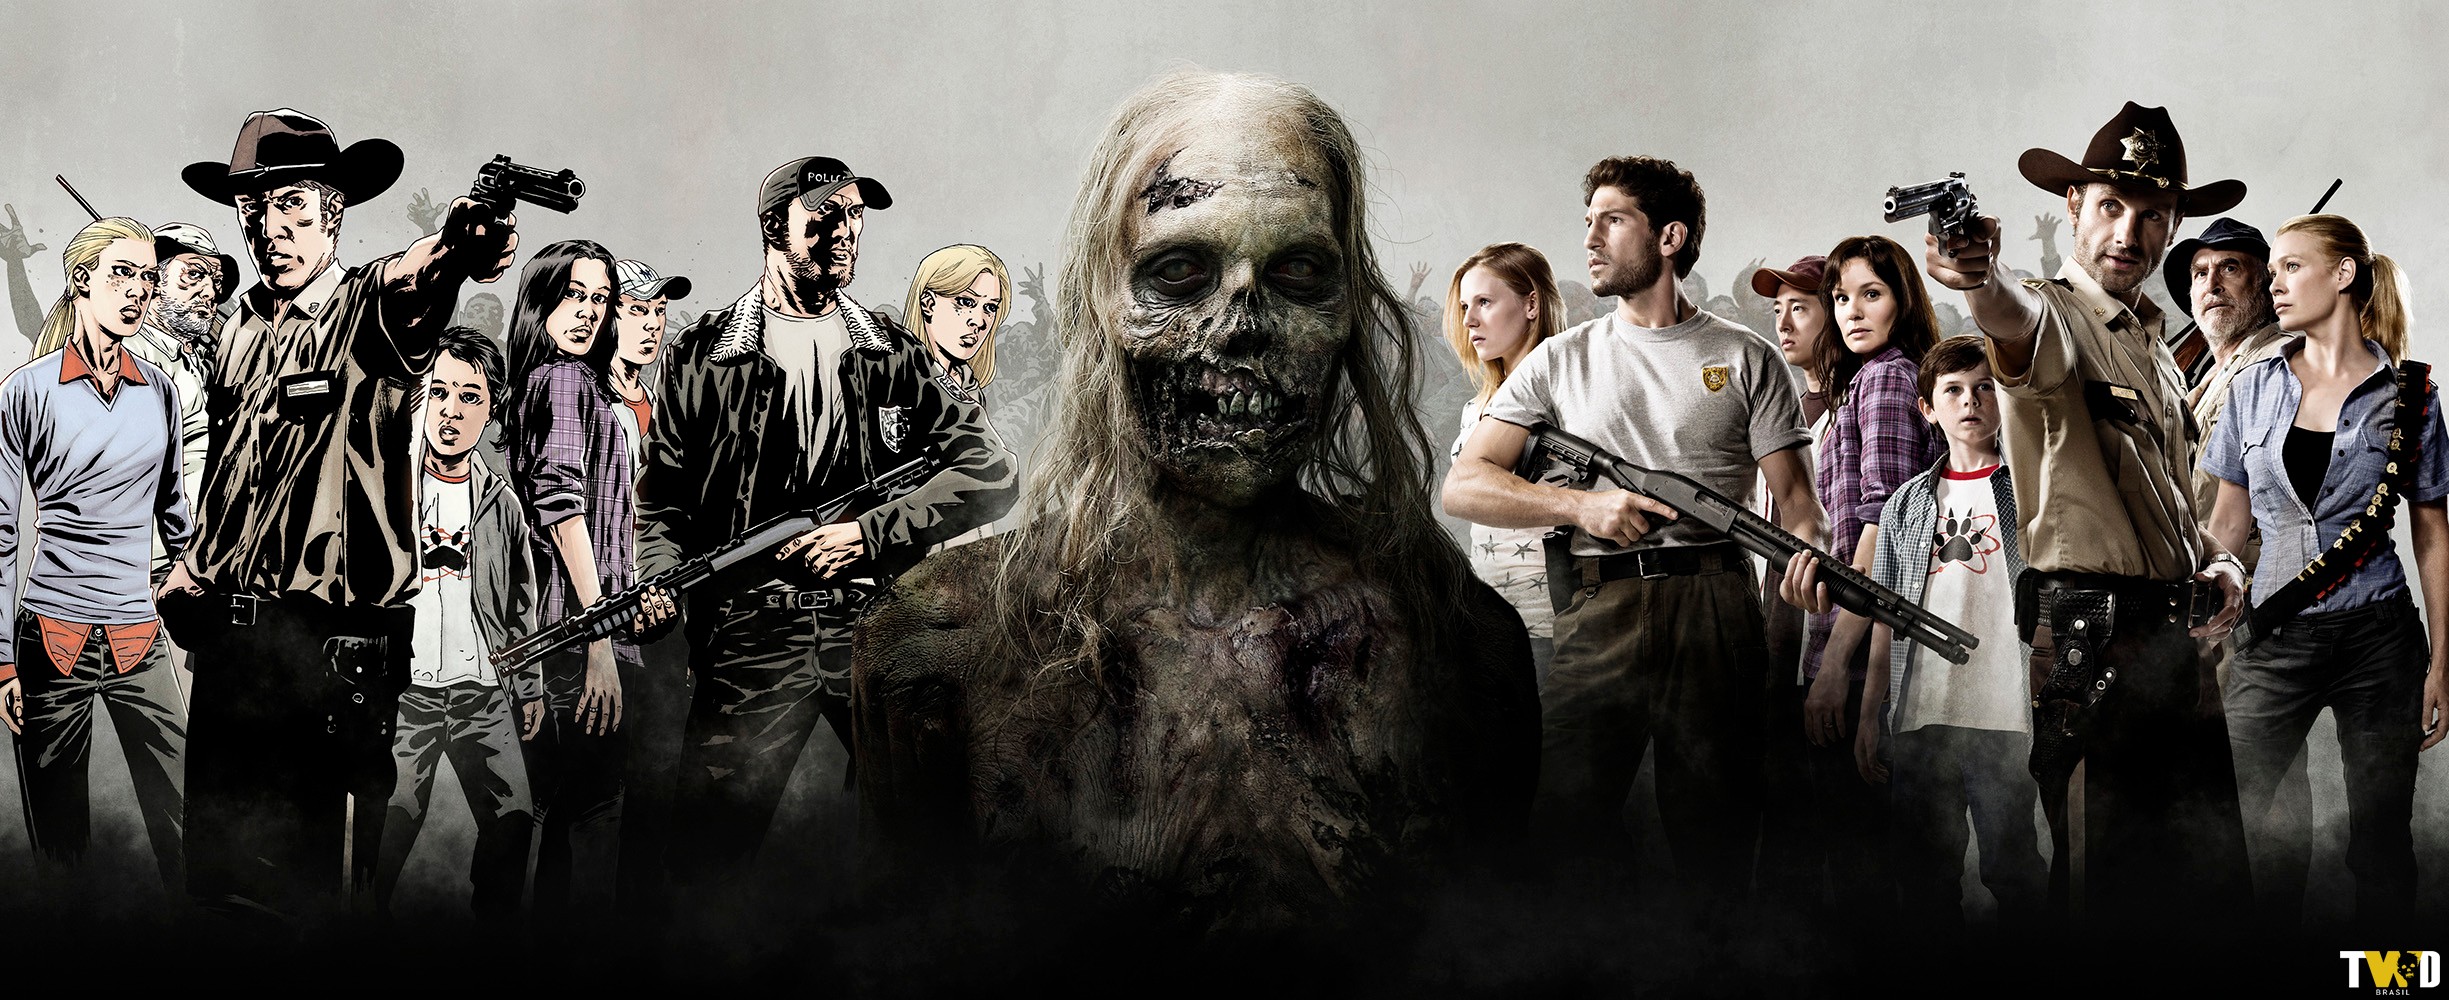 Comparação dos personagens da série com os personagens dos quadrinhos: Amy, Shane, Glenn, Lori, Carl, Rick, Dale e Andrea